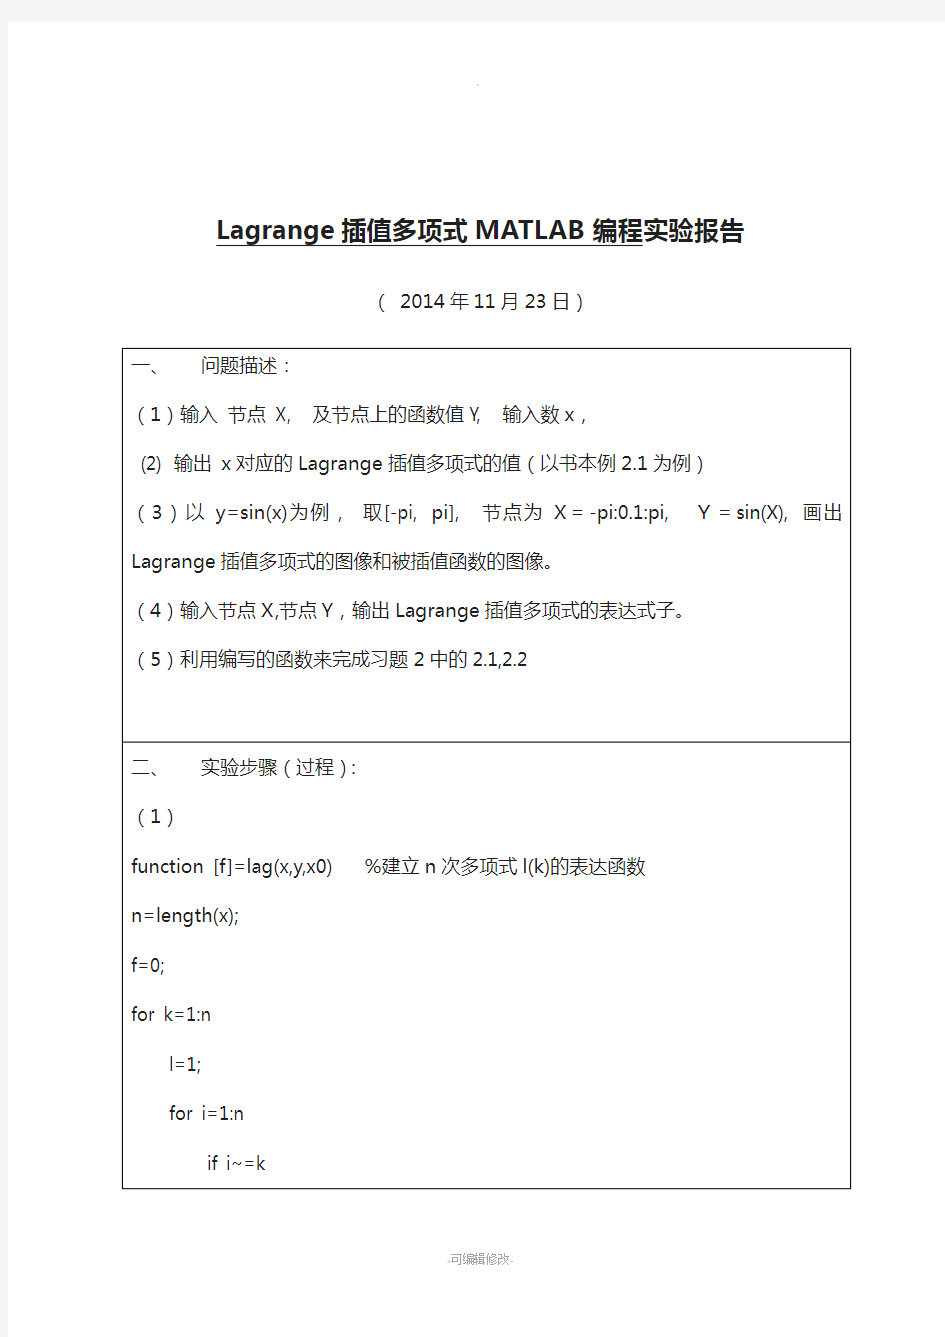 Lagrange插值多项式MATLAB编程实验报告